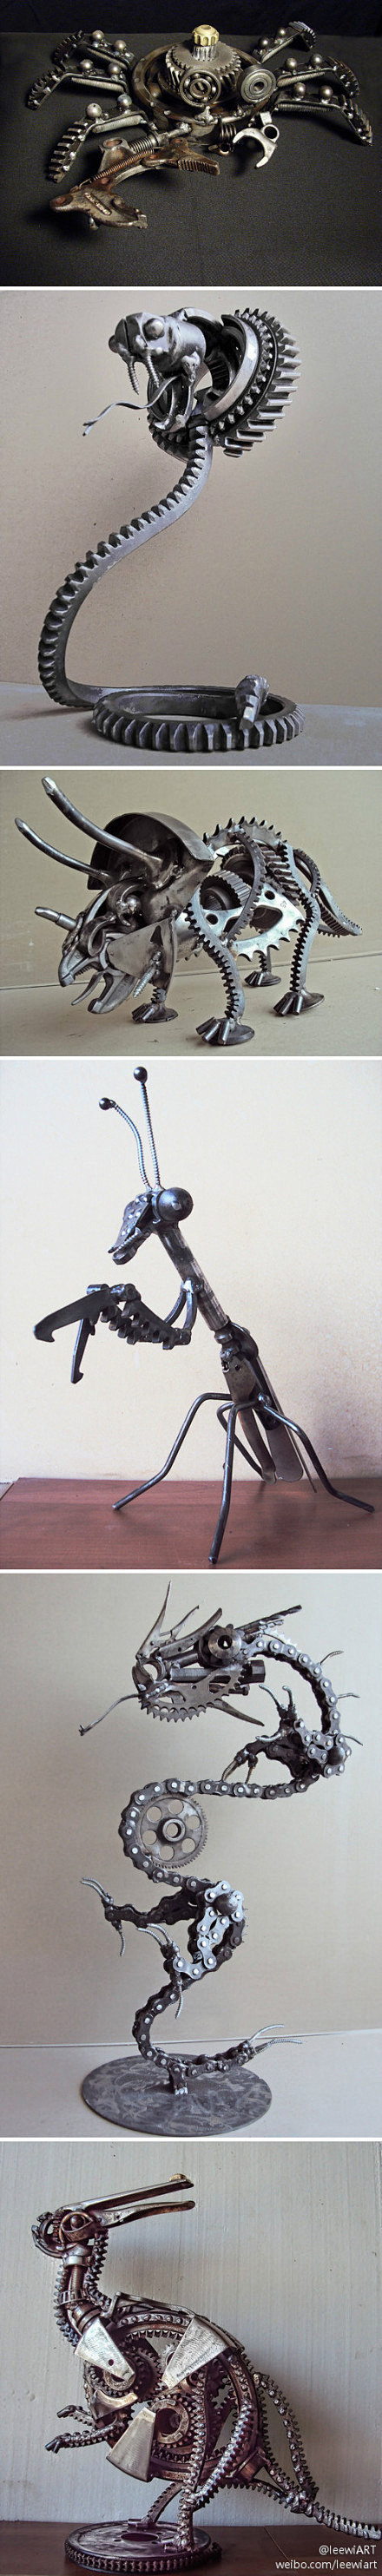 希腊雕塑家Nikos的机械零件雕塑作品。